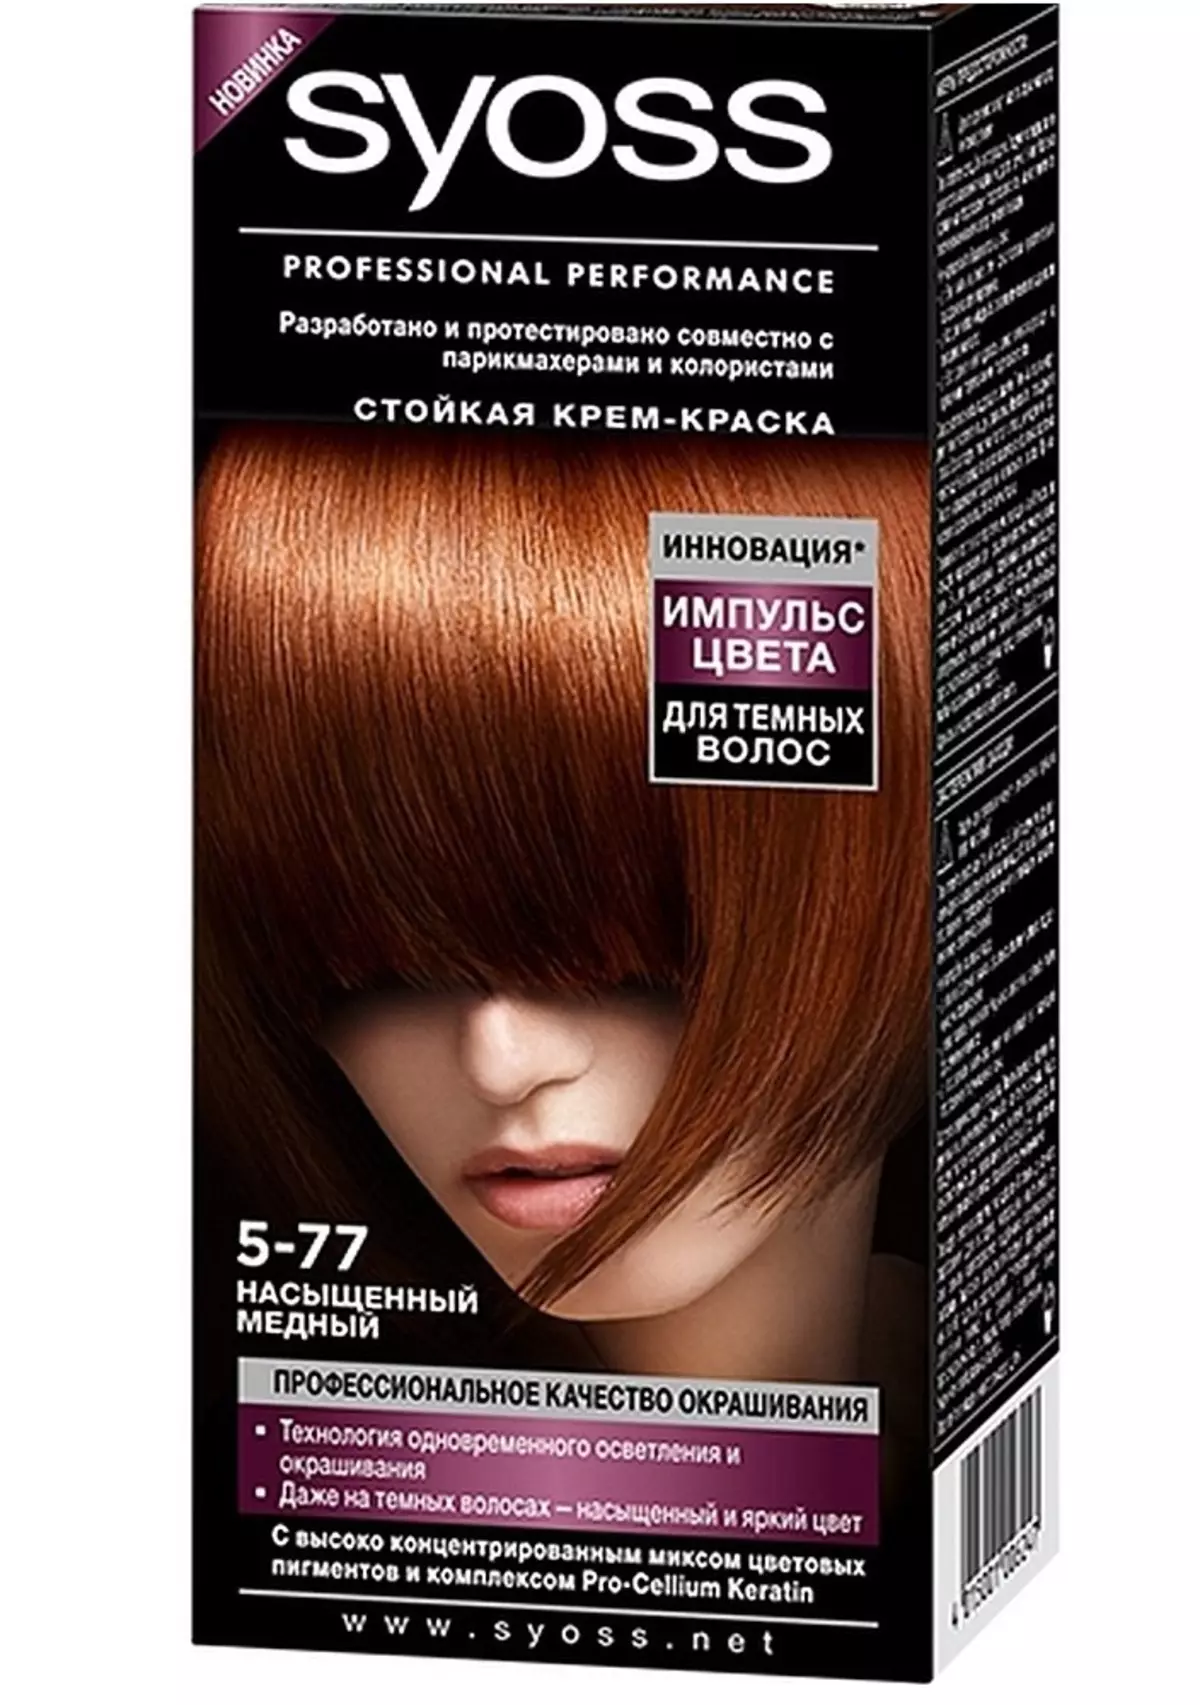 Краска восстанавливает волосы. Syoss Color 5-77 насыщенный медный. Палитра Syoss краска 5. Краска Syoss 5-77. Syoss Color краска для волос.